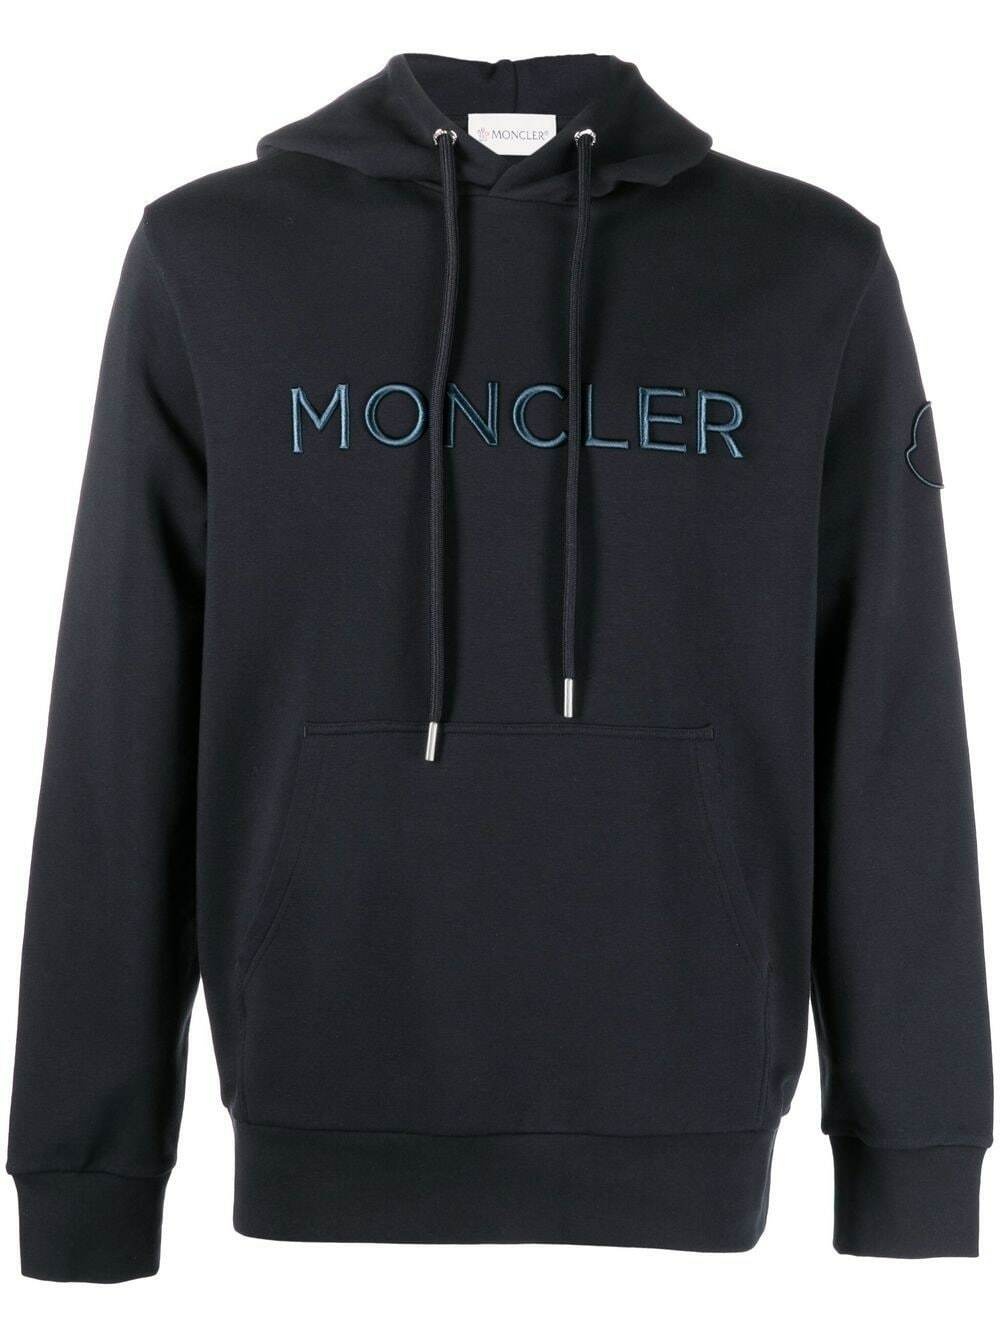 MONCLER - Logo Sweatshirt Moncler